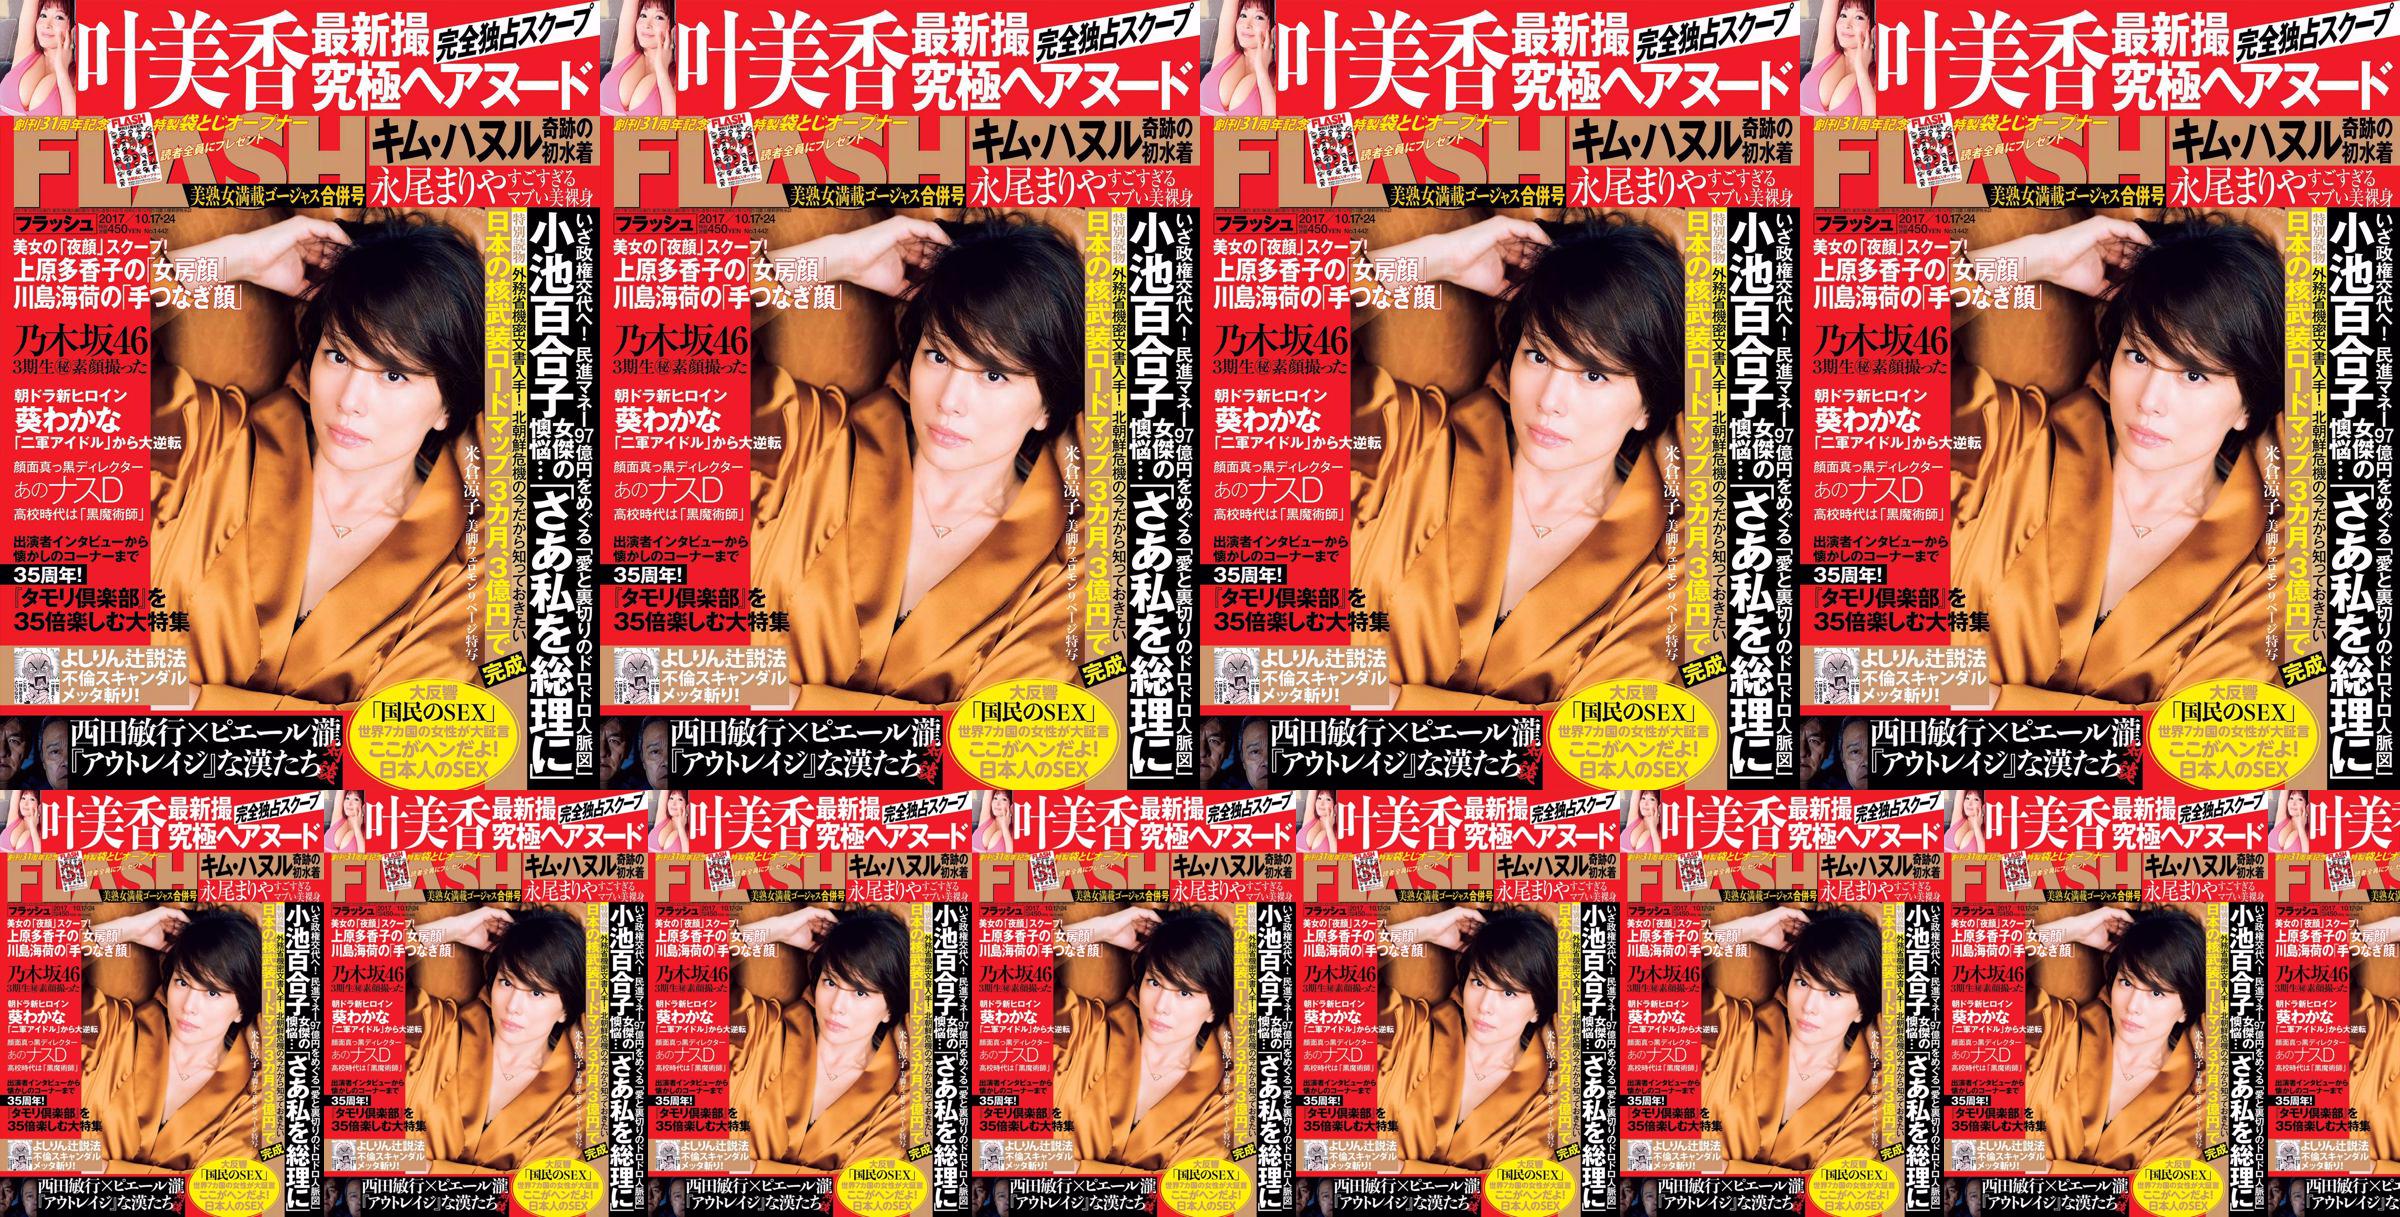 [FLASH] Yonekura Ryoko Ye Meixiang Tachibana Hoa Rin Nagao Rika 2017. 10.17-24 Tạp chí ảnh No.9c49c4 Trang 1